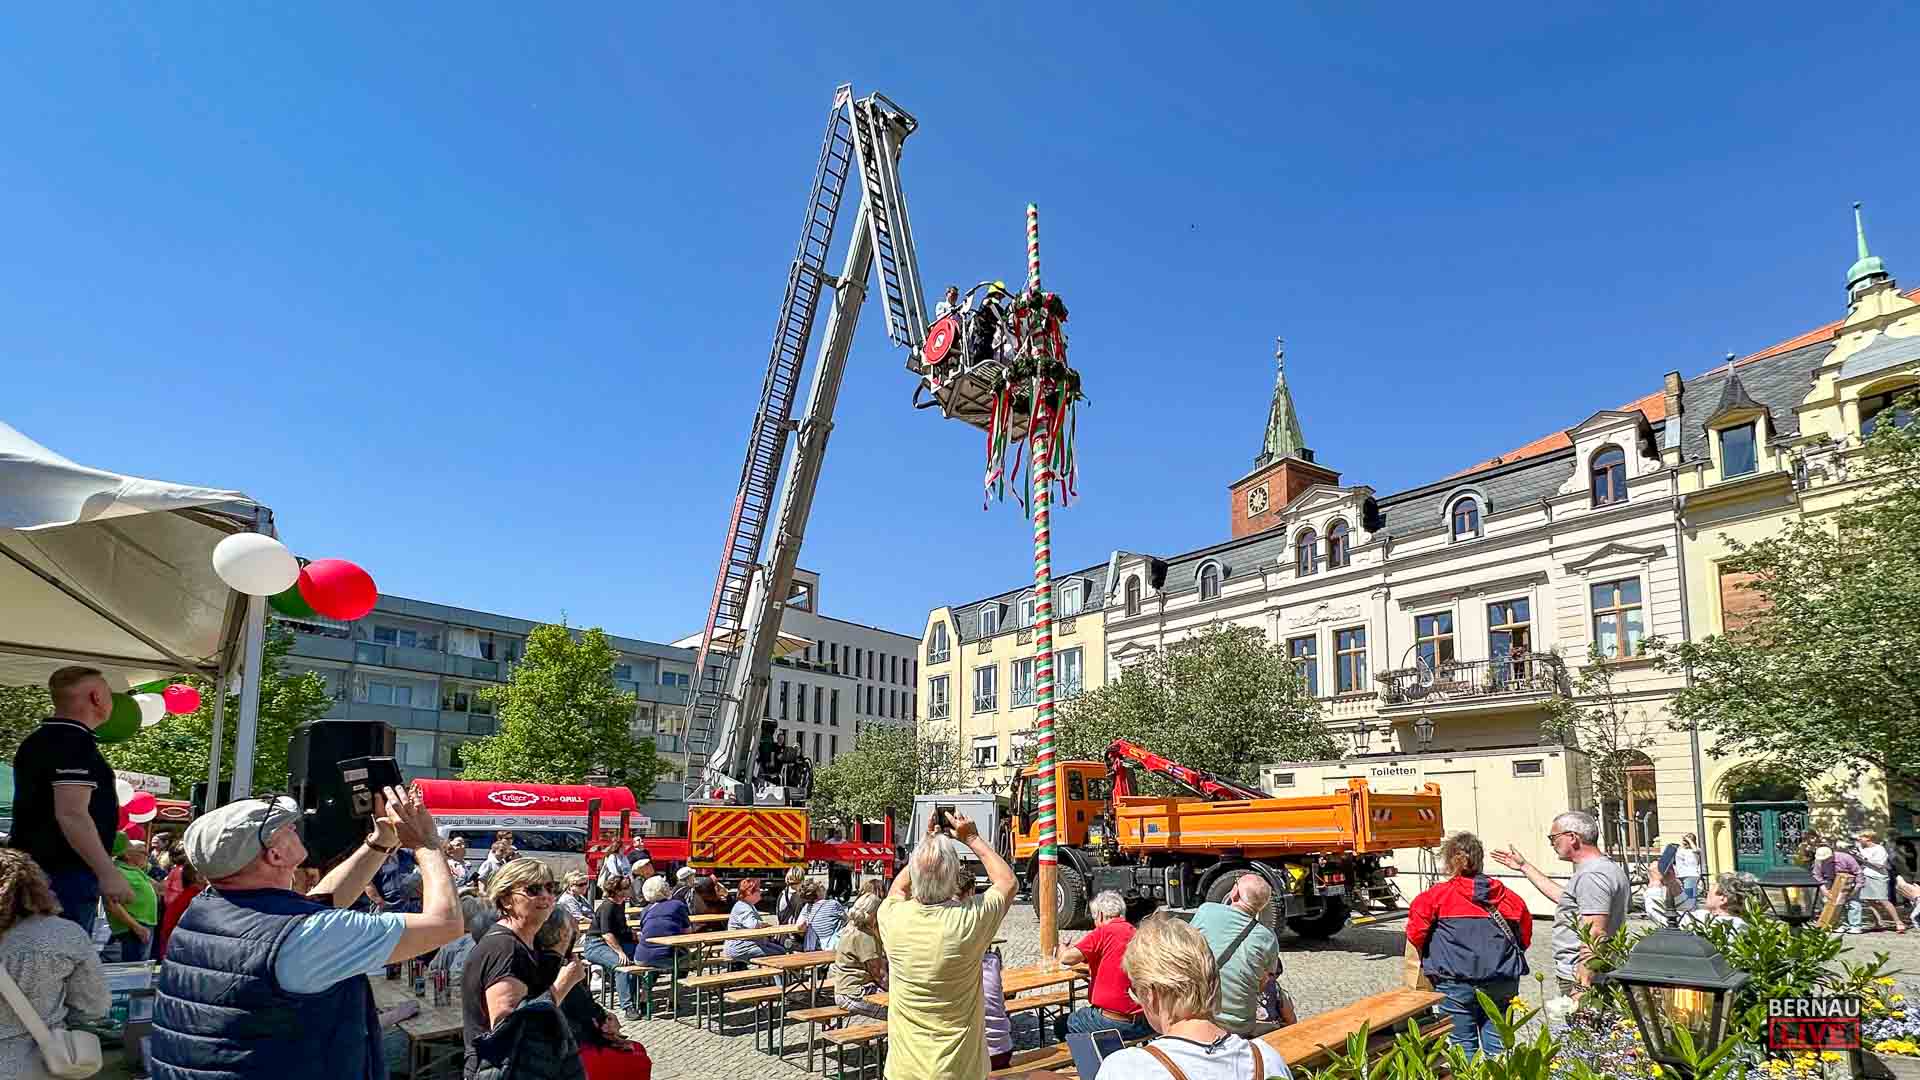 Soeben wurde der diesjährige Maibaum auf dem Marktplatz Bernau aufgestellt